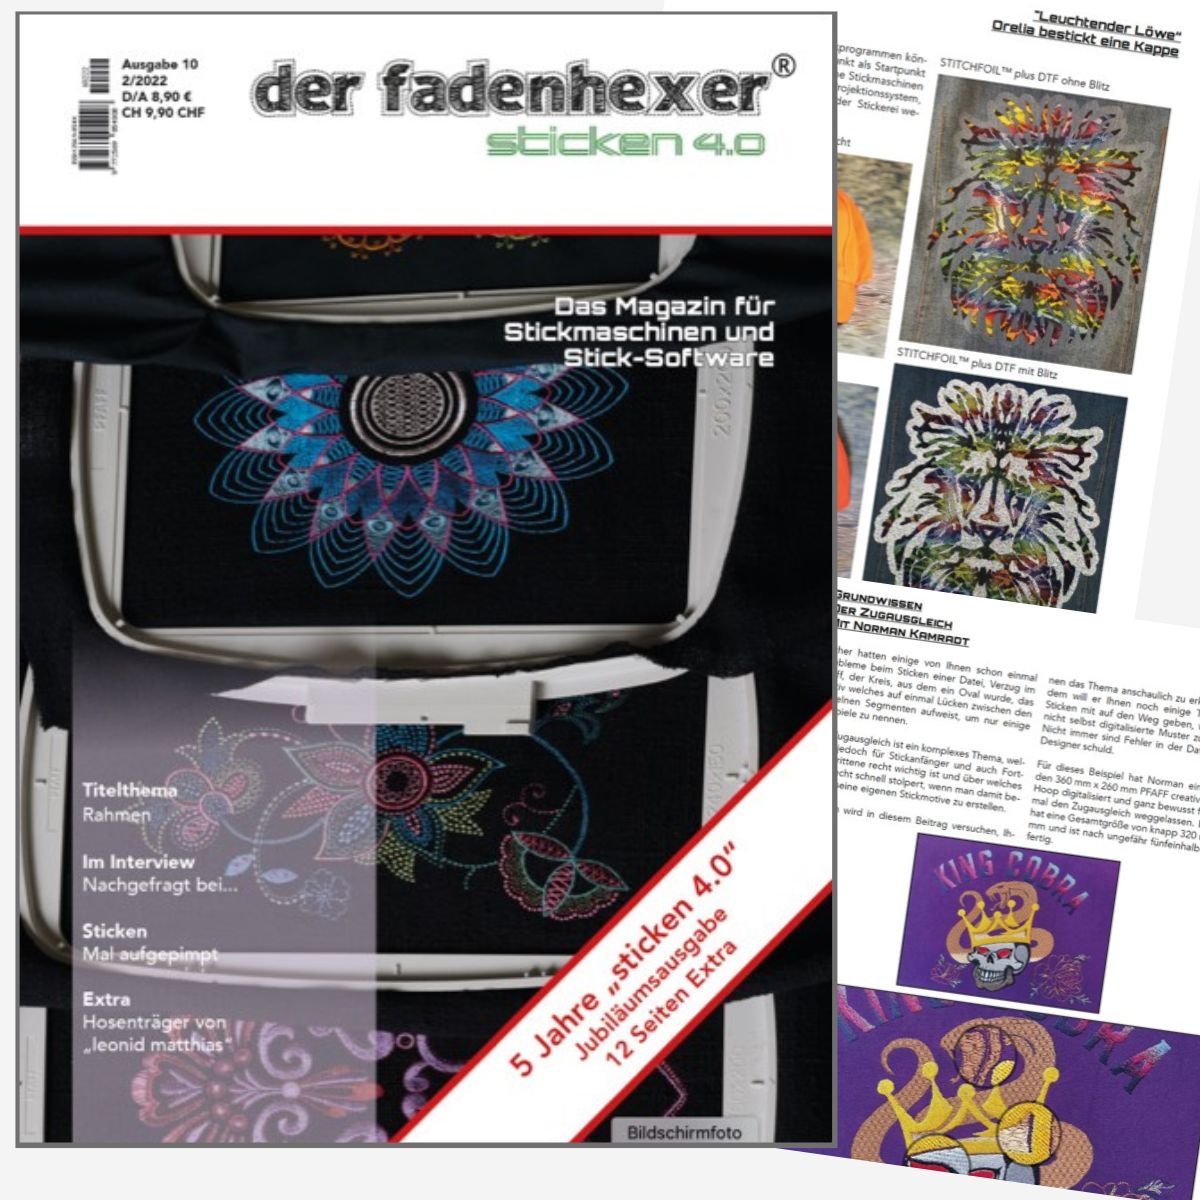 Sticken 4.0 - Das Magazin für Stickmaschinen
und Software  (German)